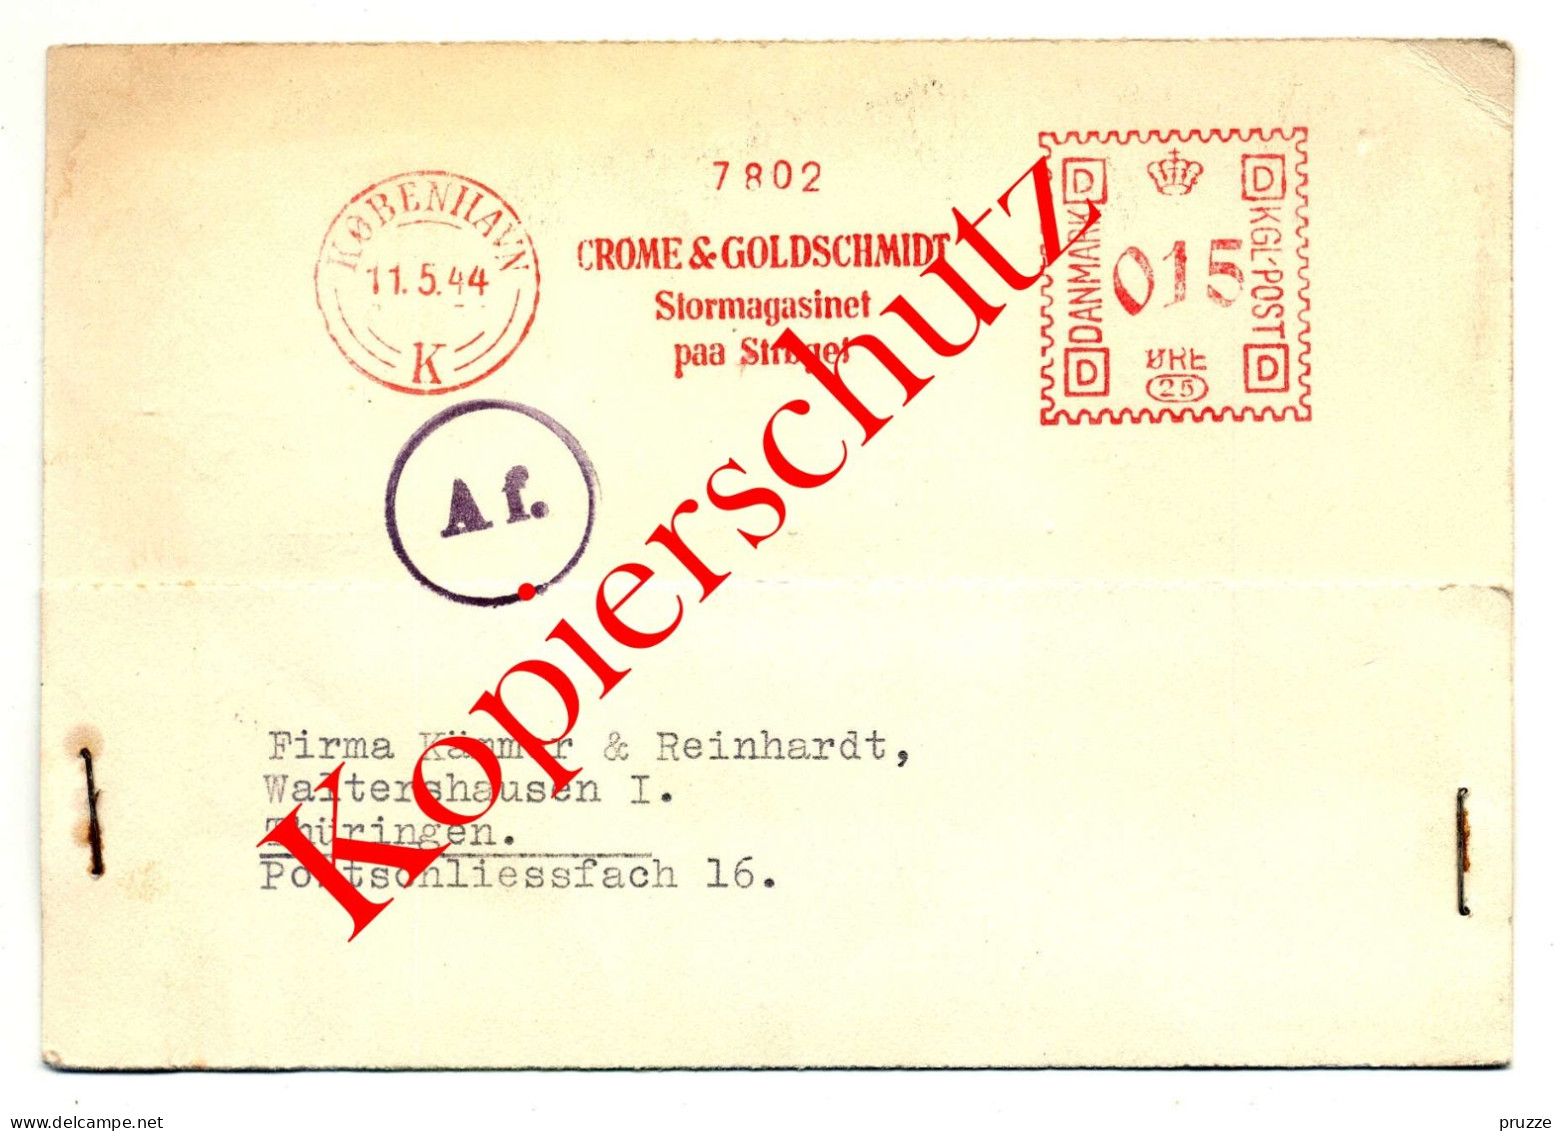 Crome & Goldschmidt Kobenhavn - Kopenhagen 1944 Nach Waltershausen, Maschinenstempel, Zensur - Postal Stationery